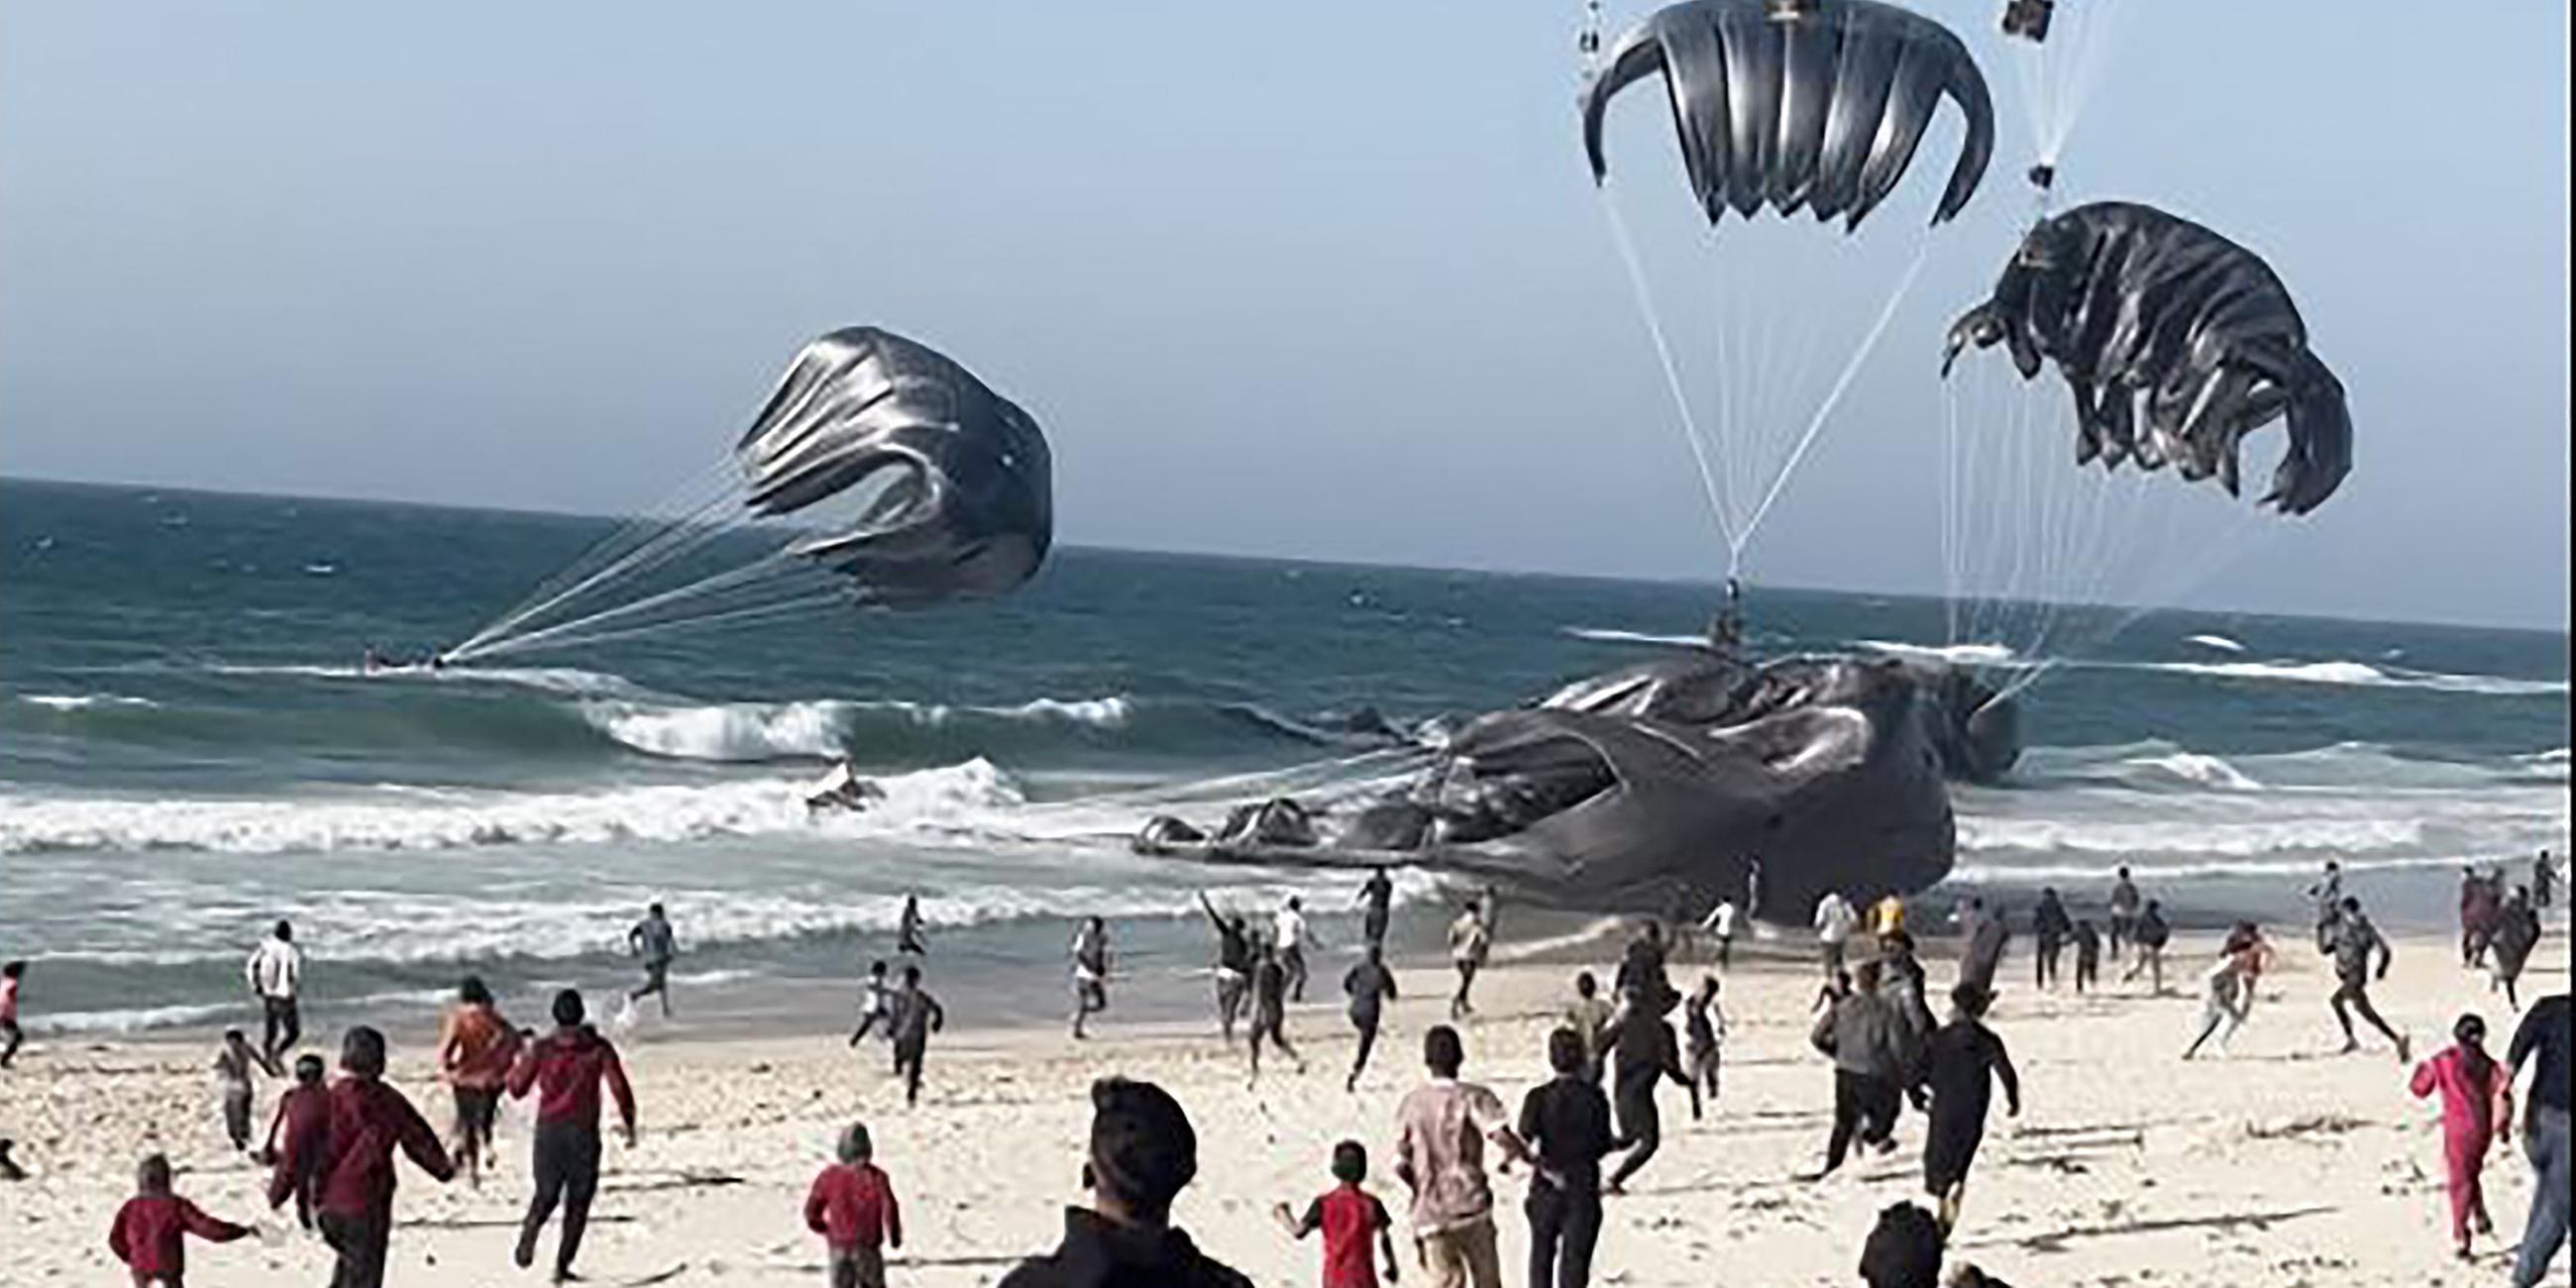 Gazastreifen: Palästinenser rennen auf Fallschirme zu, an denen Lebensmittelpakete befestigt sind.